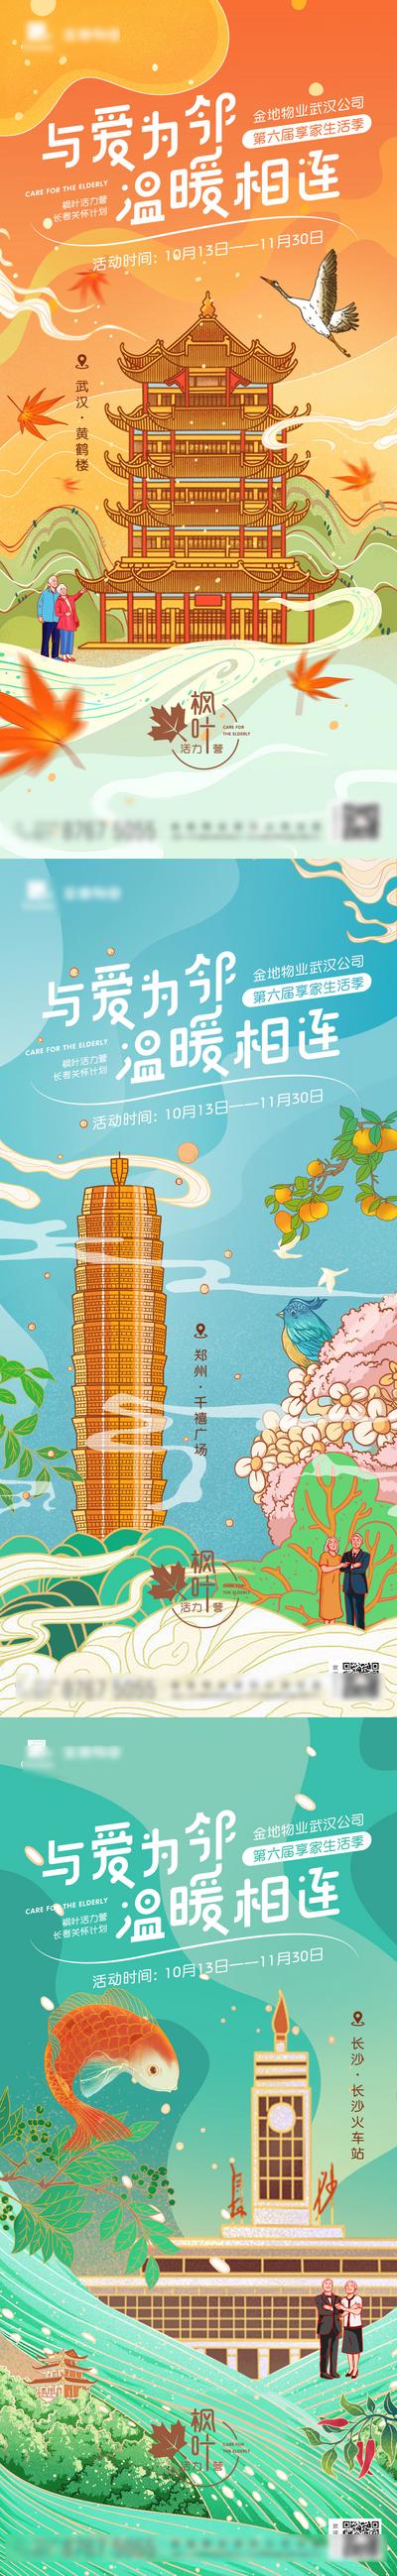 南门网 海报 房地产 地标 手绘 插画 武汉 长沙 郑州